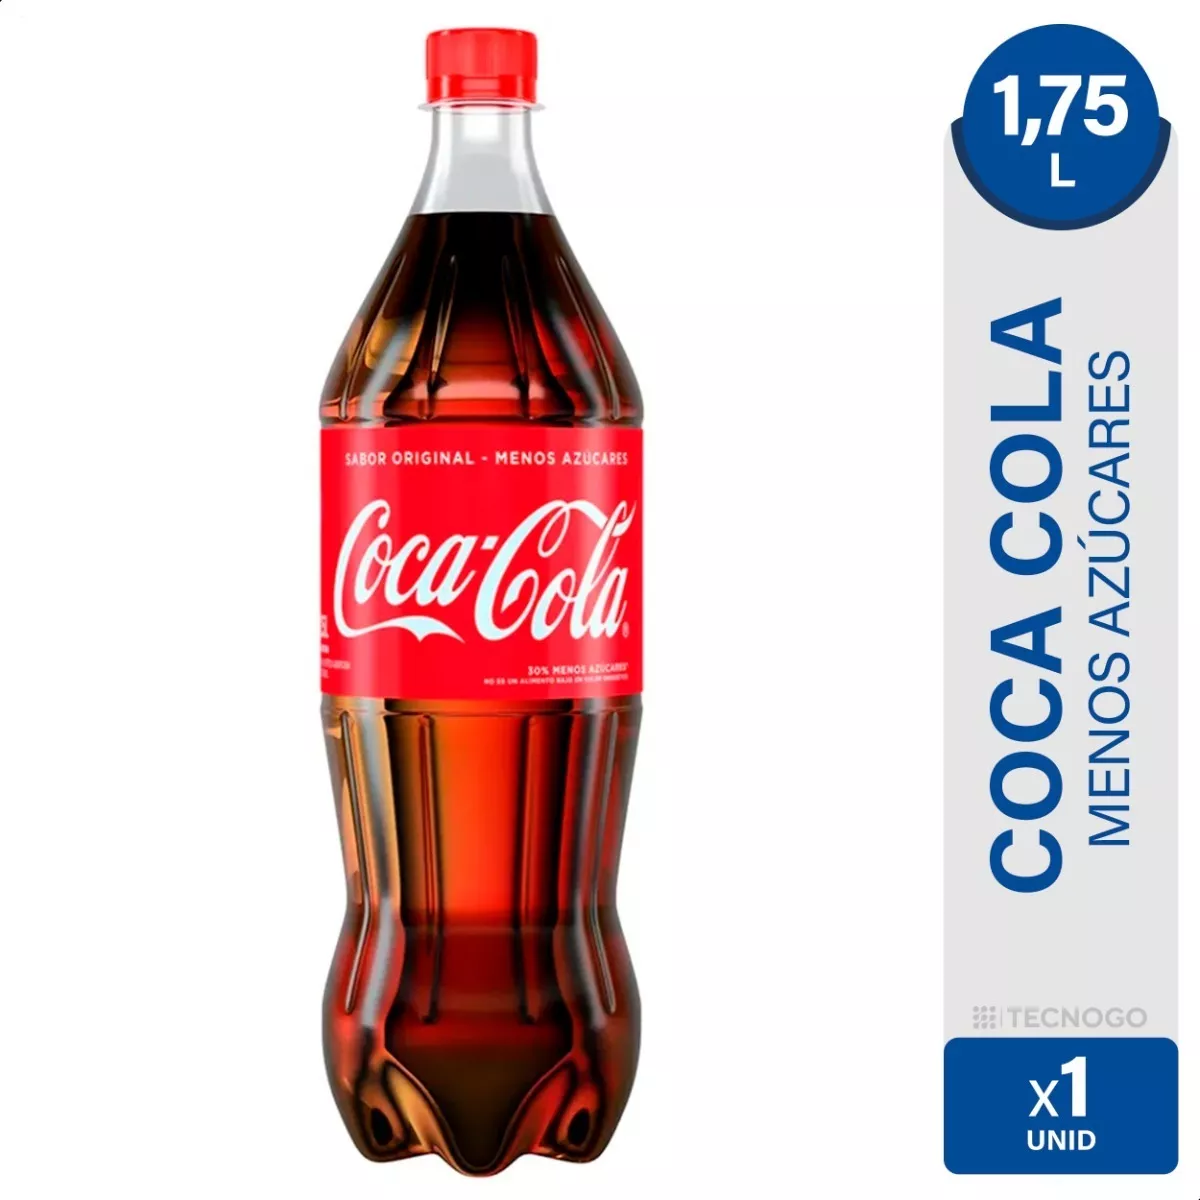 Coca Cola Gaseosa Original Menos Azucares - 01mercado